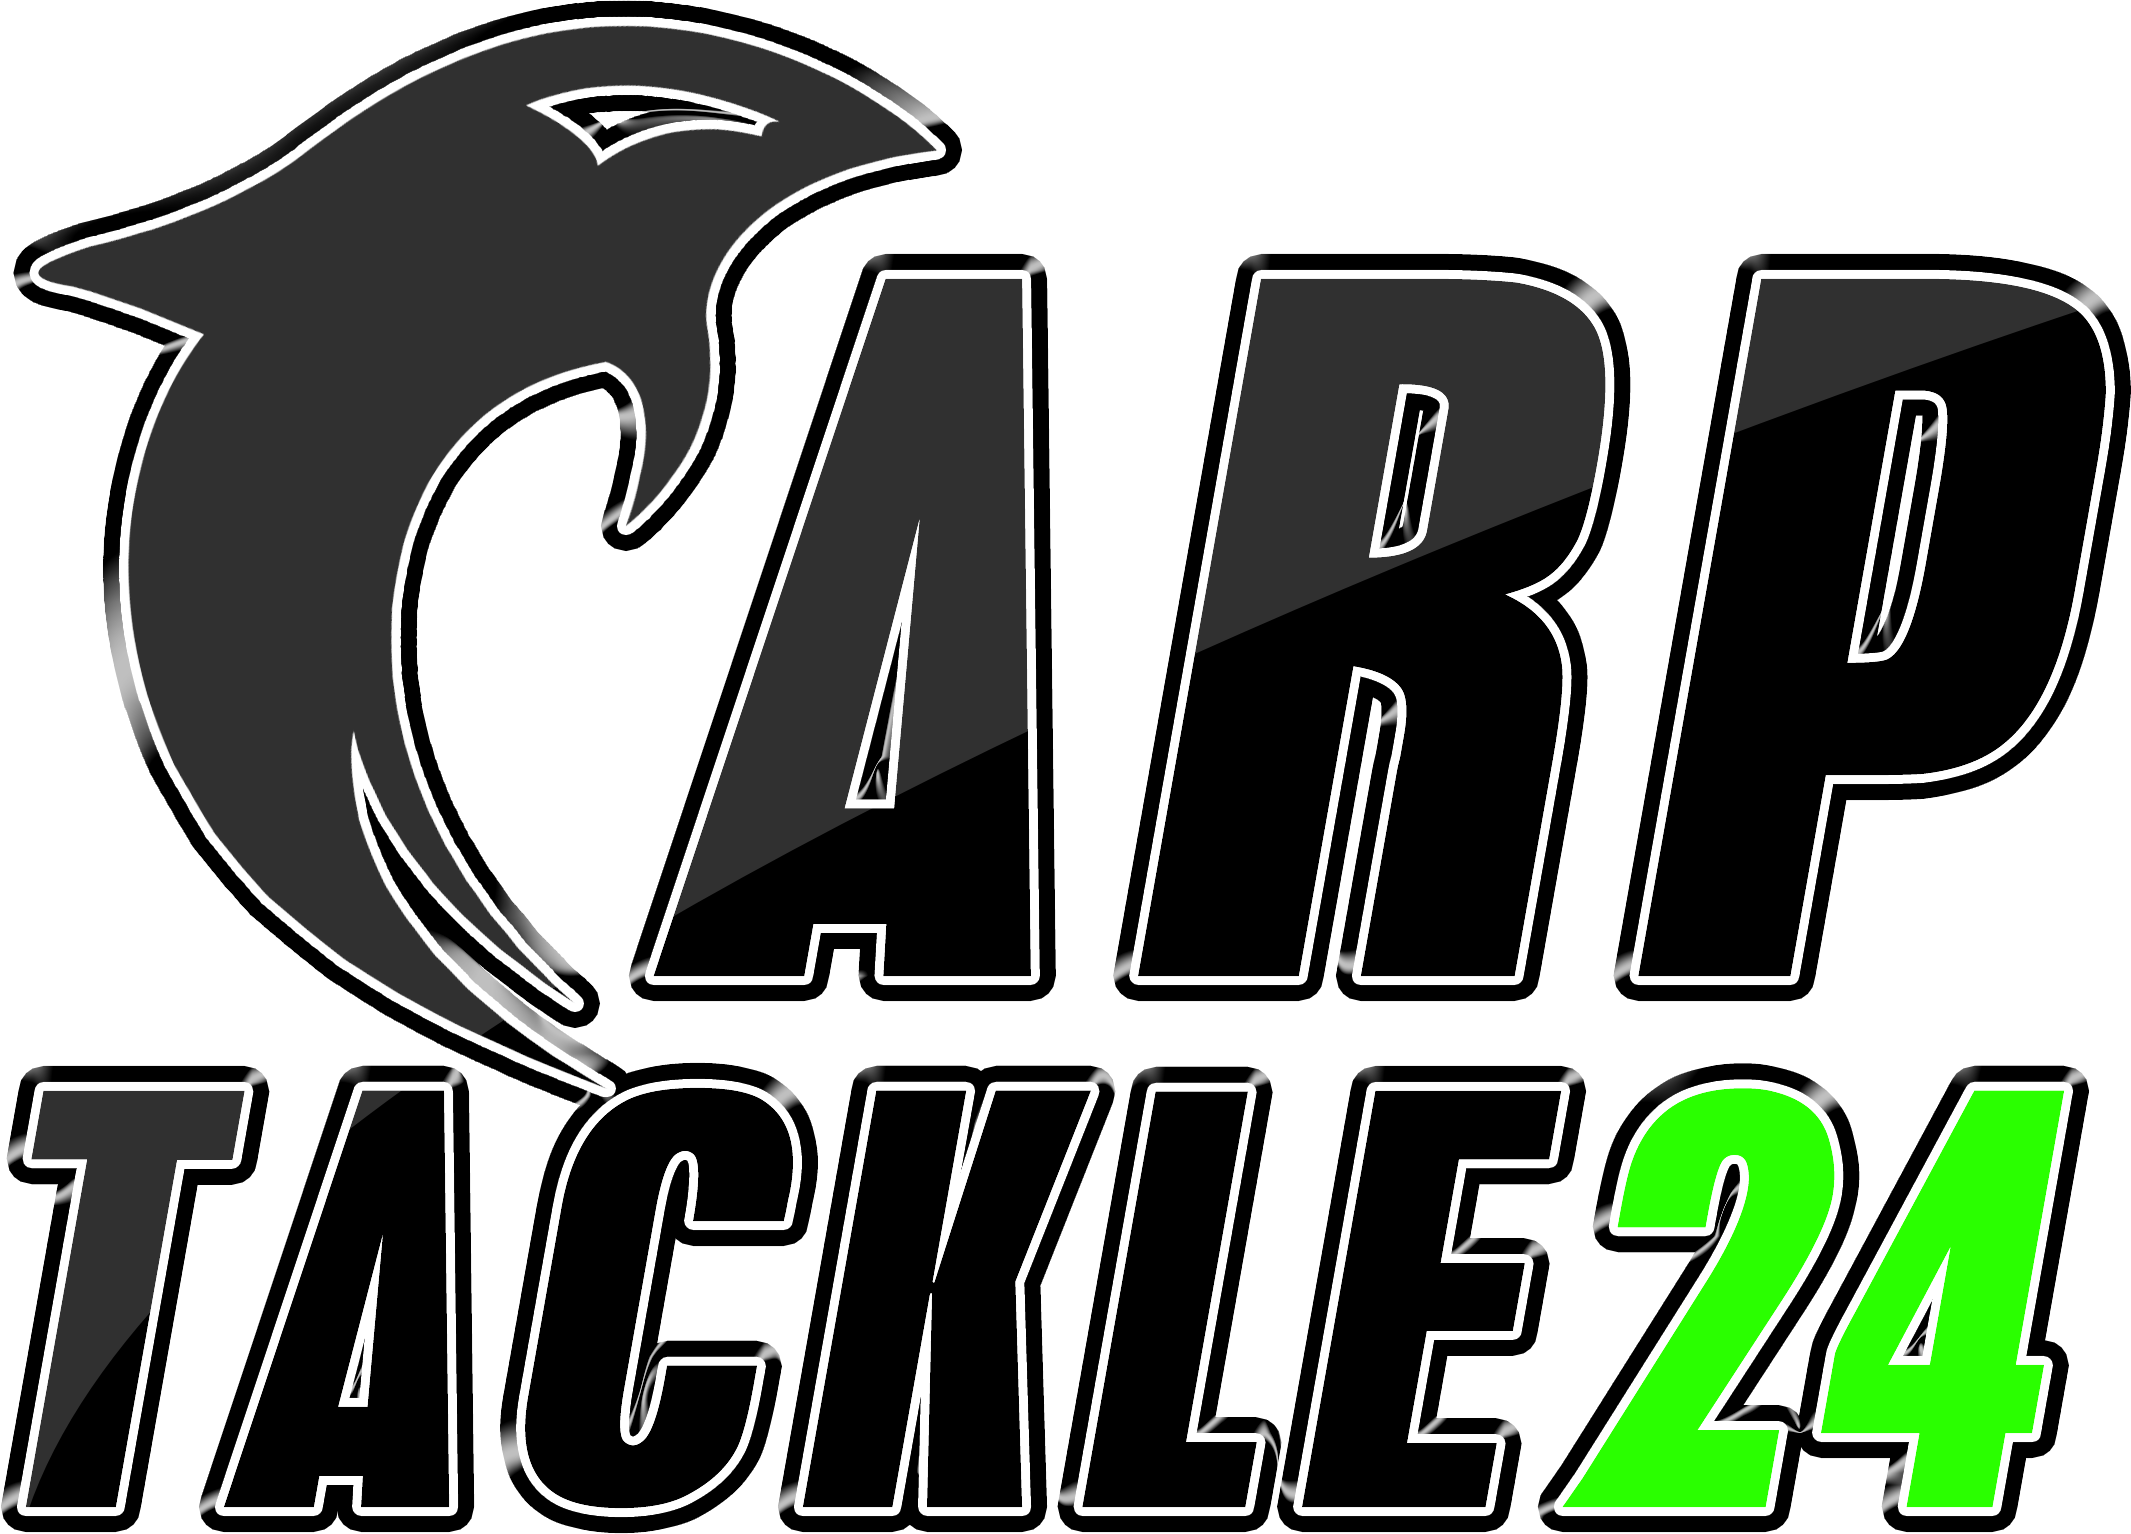 (c) Carptackle24.com